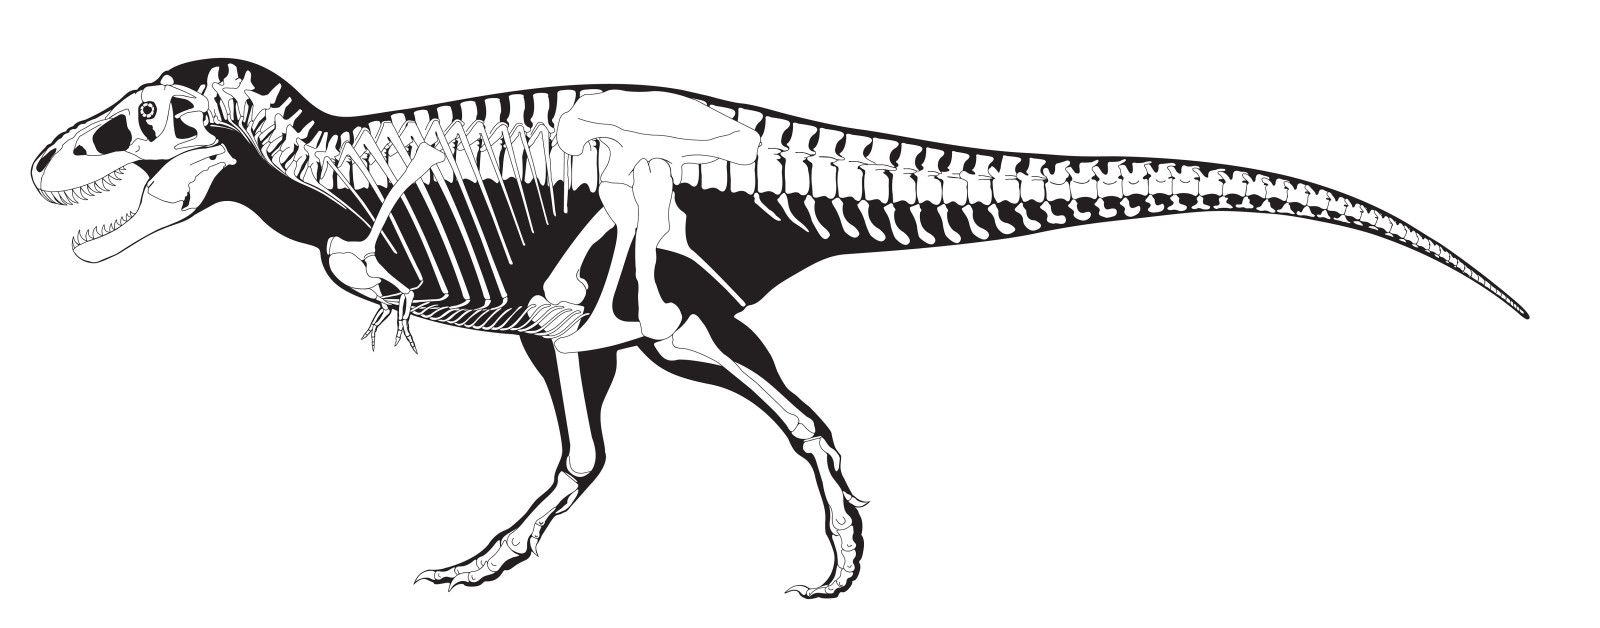 đen, trắng, bộ xương, khủng long, Tyrannosaurus